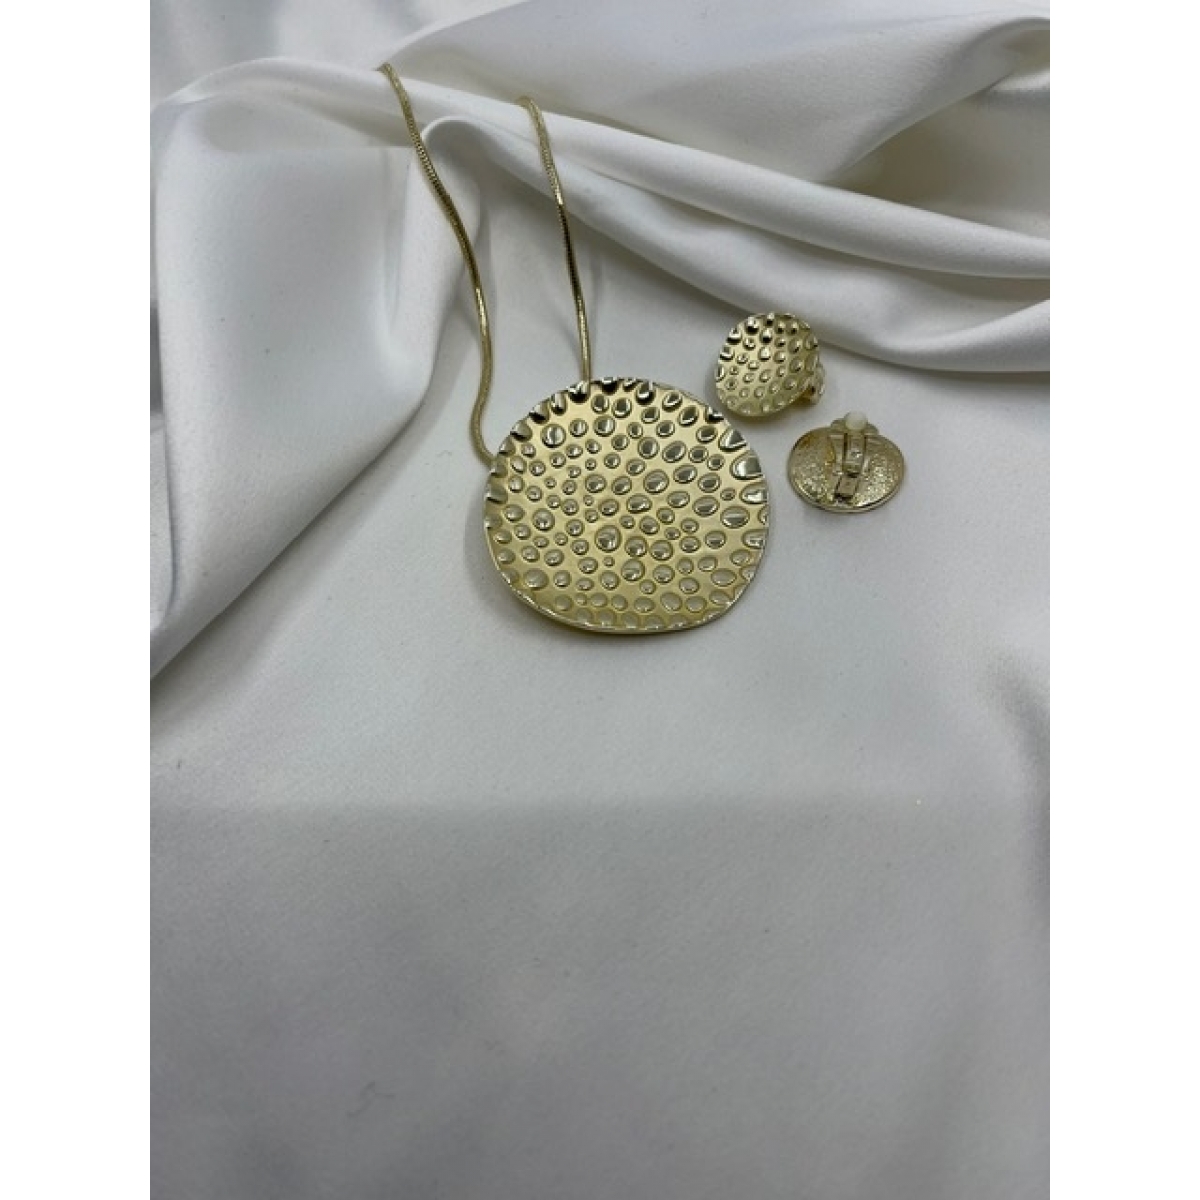 Súprava pozlátená náhrdelníka a náušníc zdobená s kruhovým príveskom s matnými zlatými bodkami